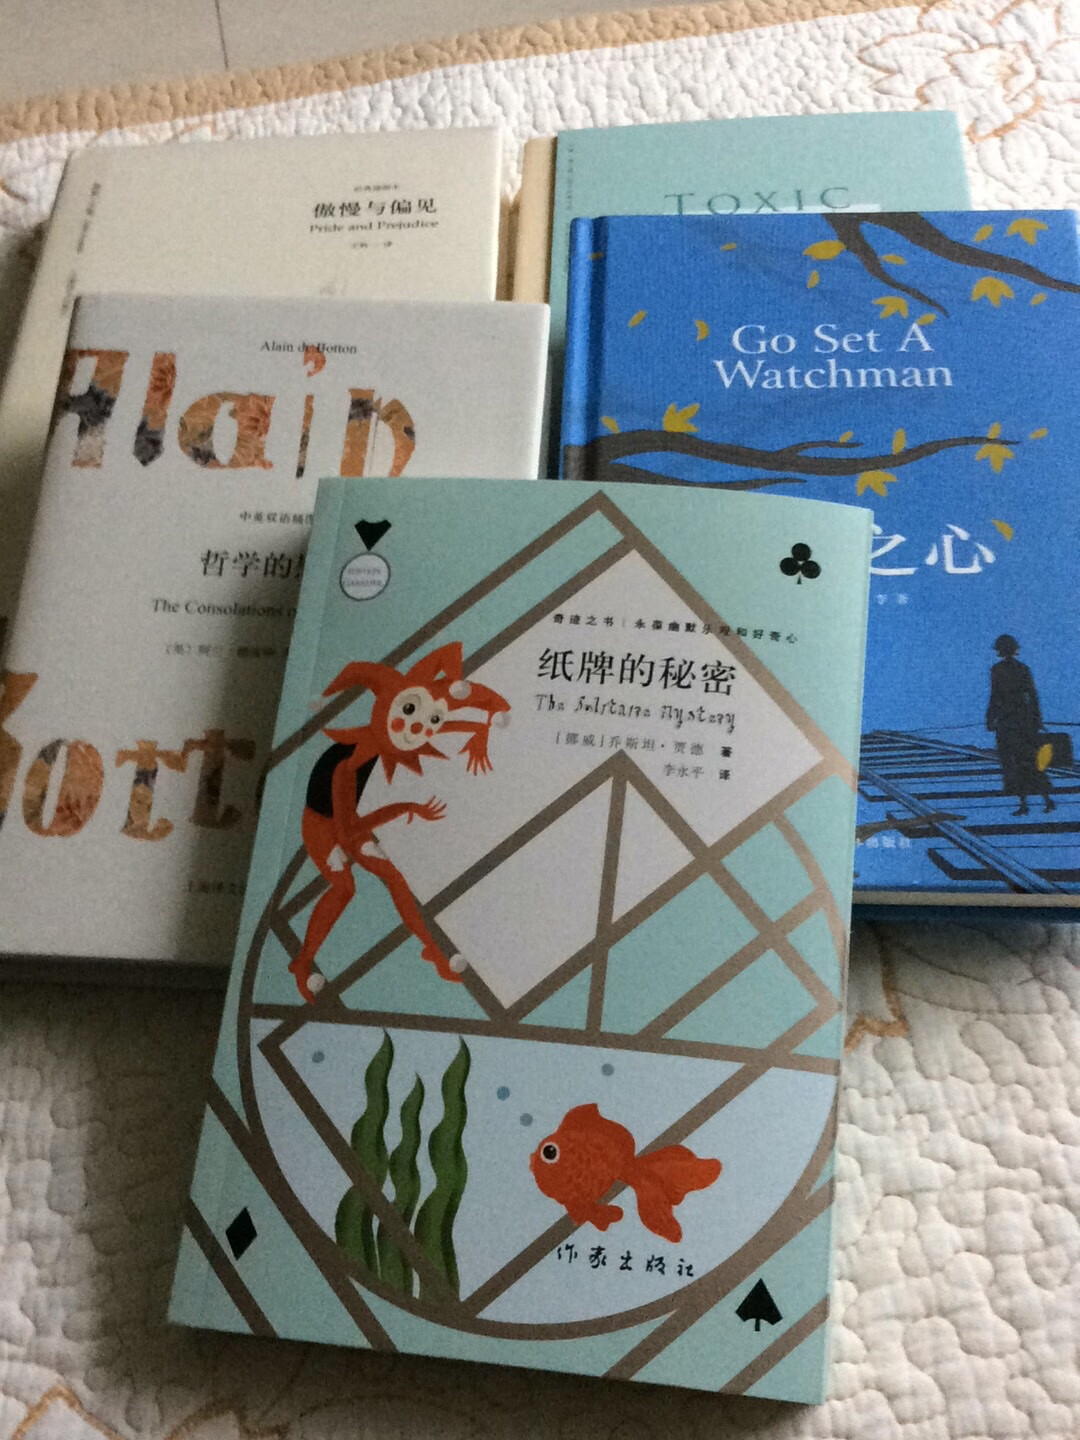 在东京买几回书了，服务好，包装好，物流快，快递小哥也给力，下次还会买。